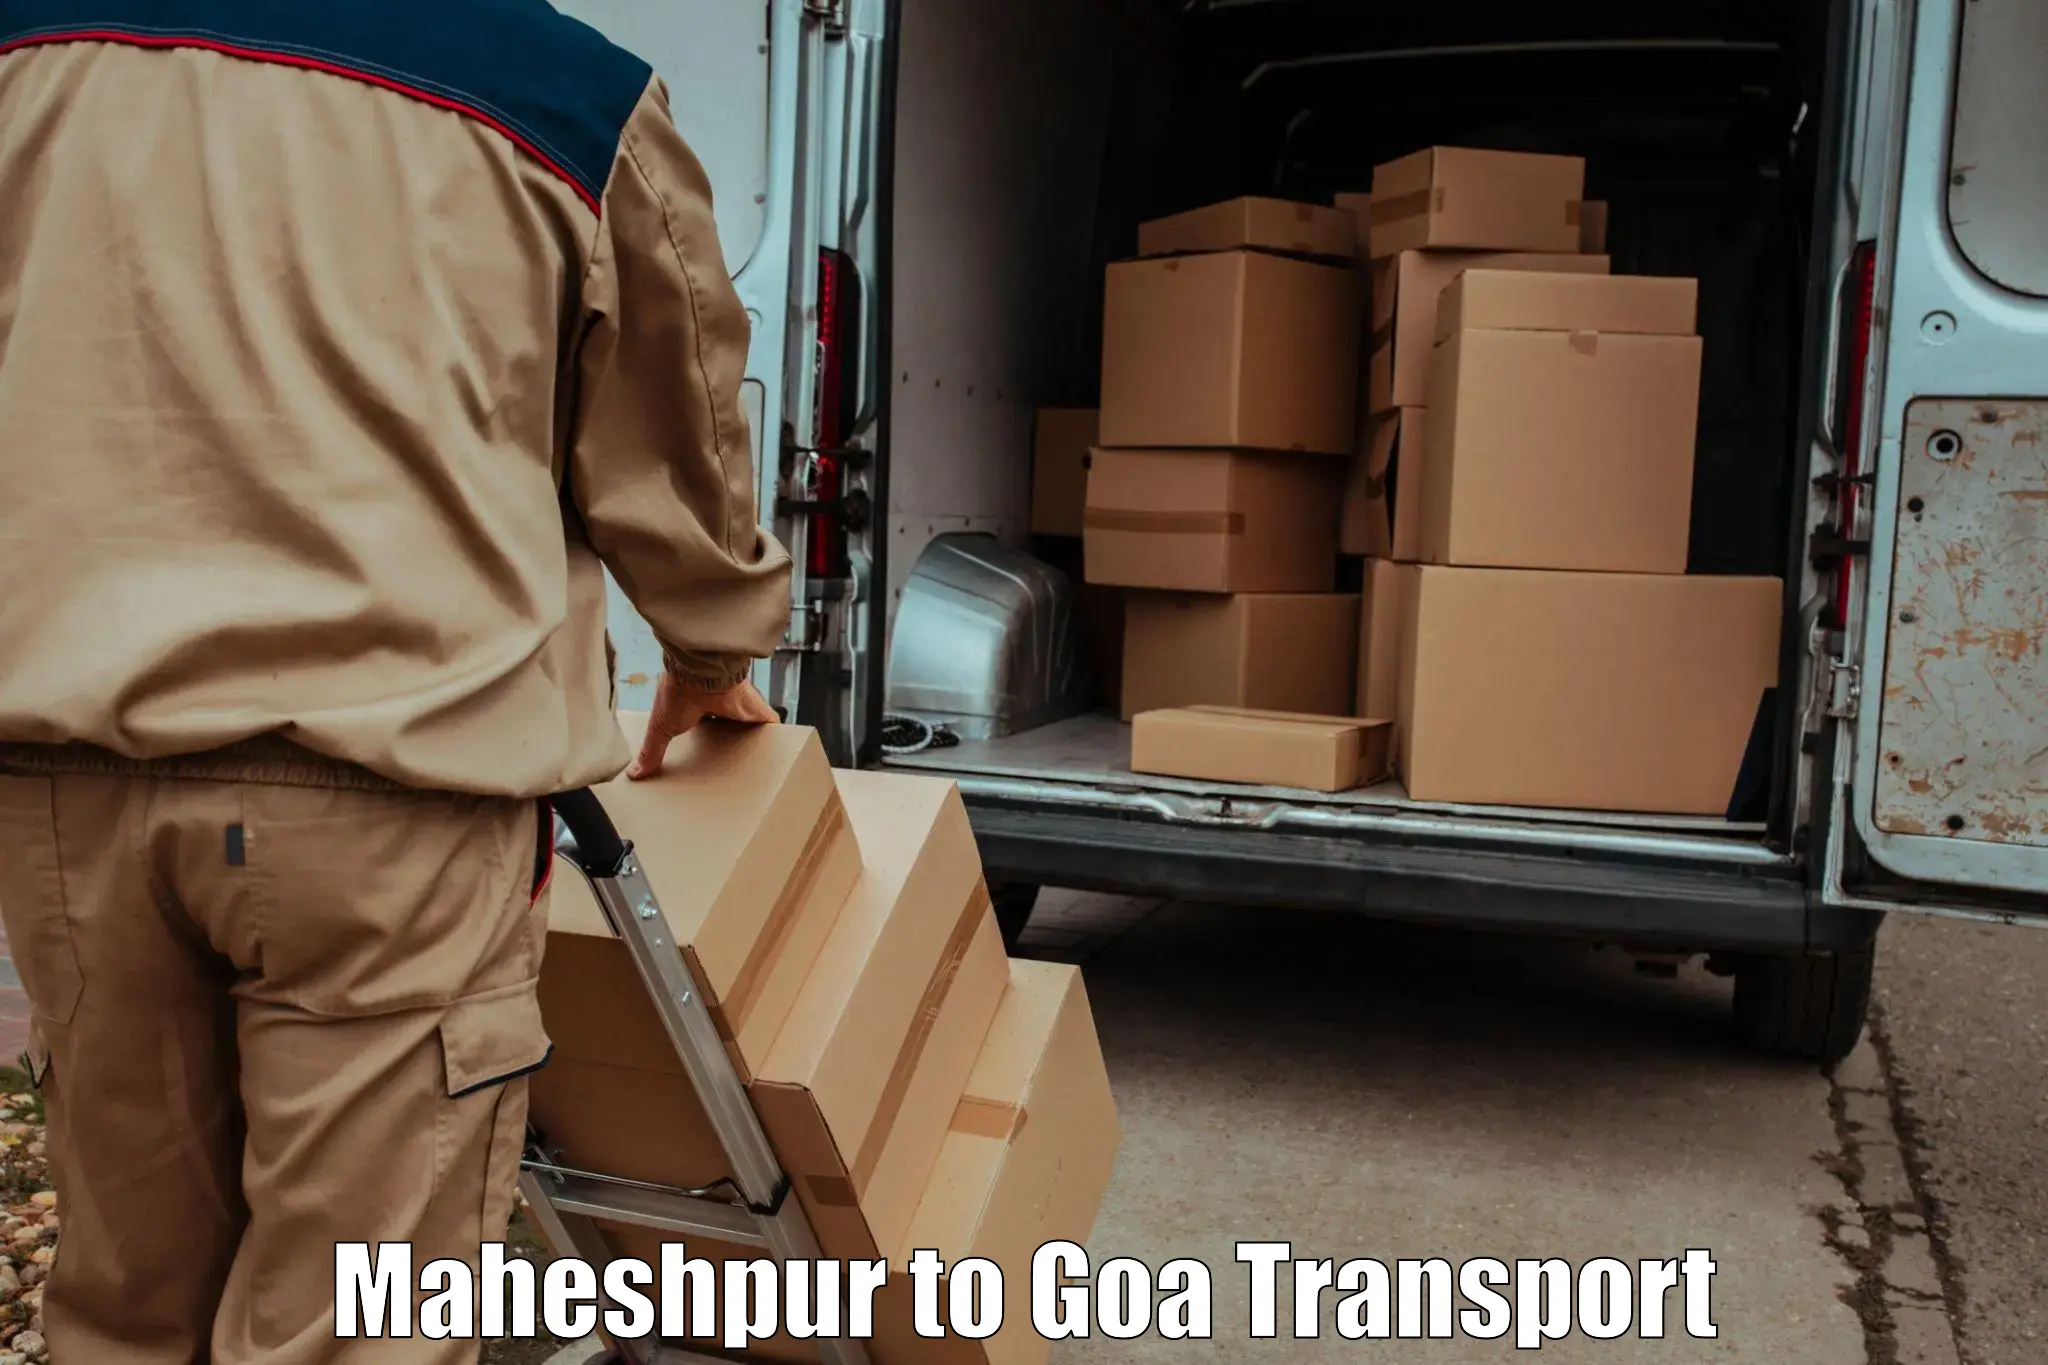 Daily transport service Maheshpur to Ponda